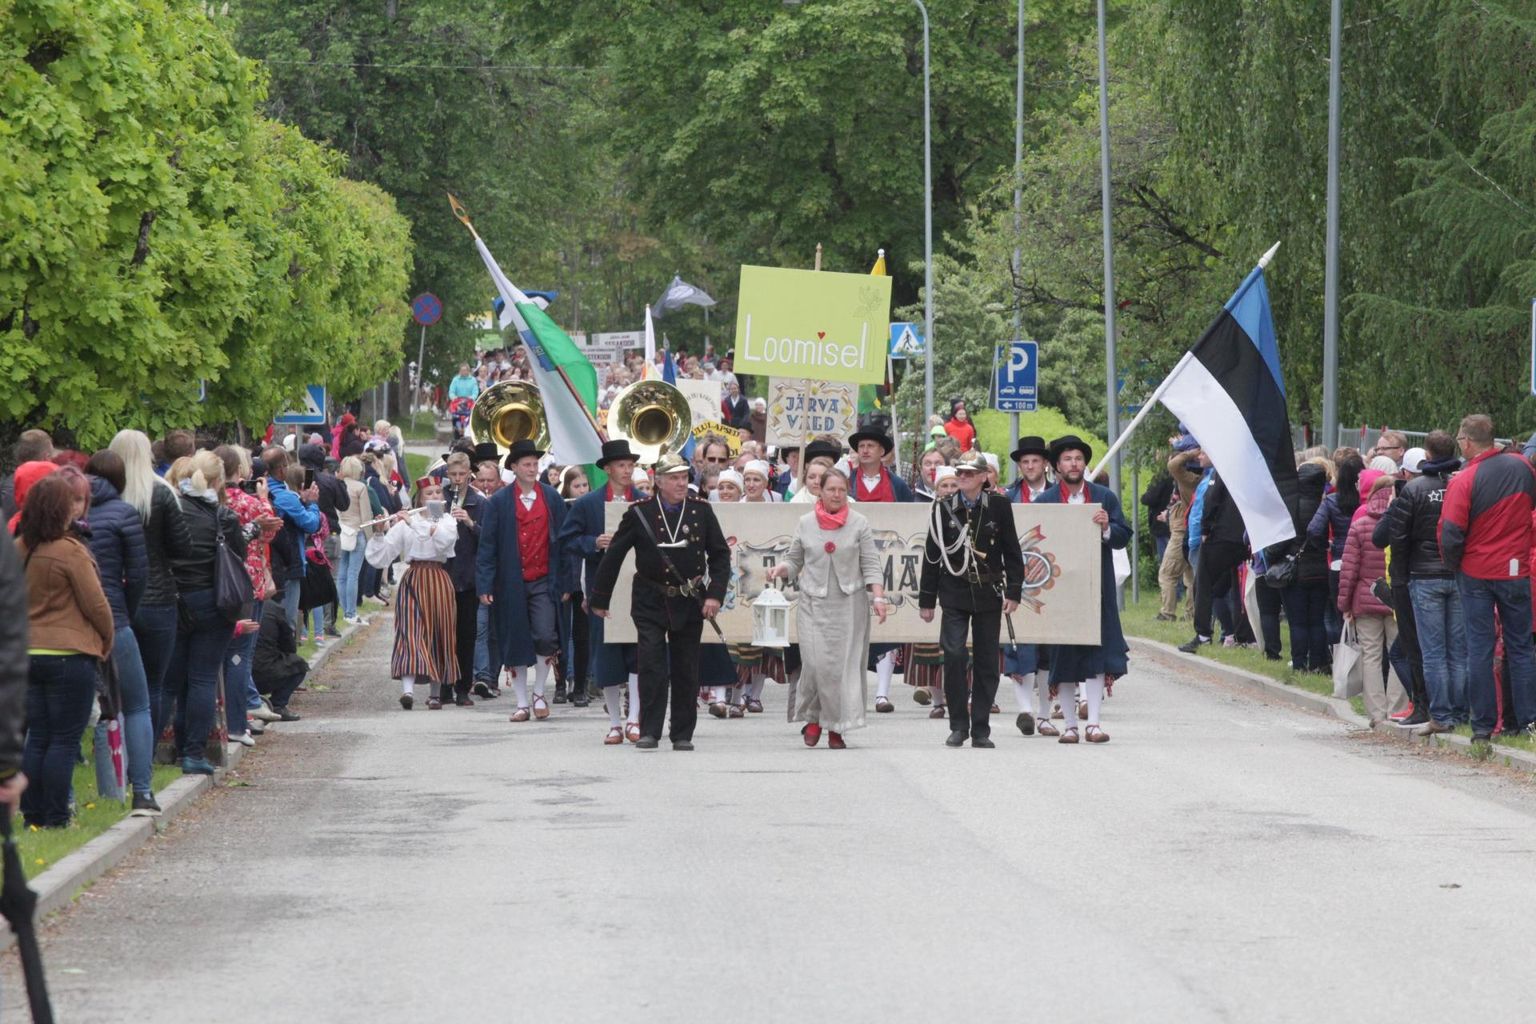 Möödunud aastal toimus Järvamaa laulu- ja tantuspidu Türil. Tänavu jääb pidu ära, kuid järgmisel aastal lauldakse ja tantsitakse Järva vallas, Vargamäel.